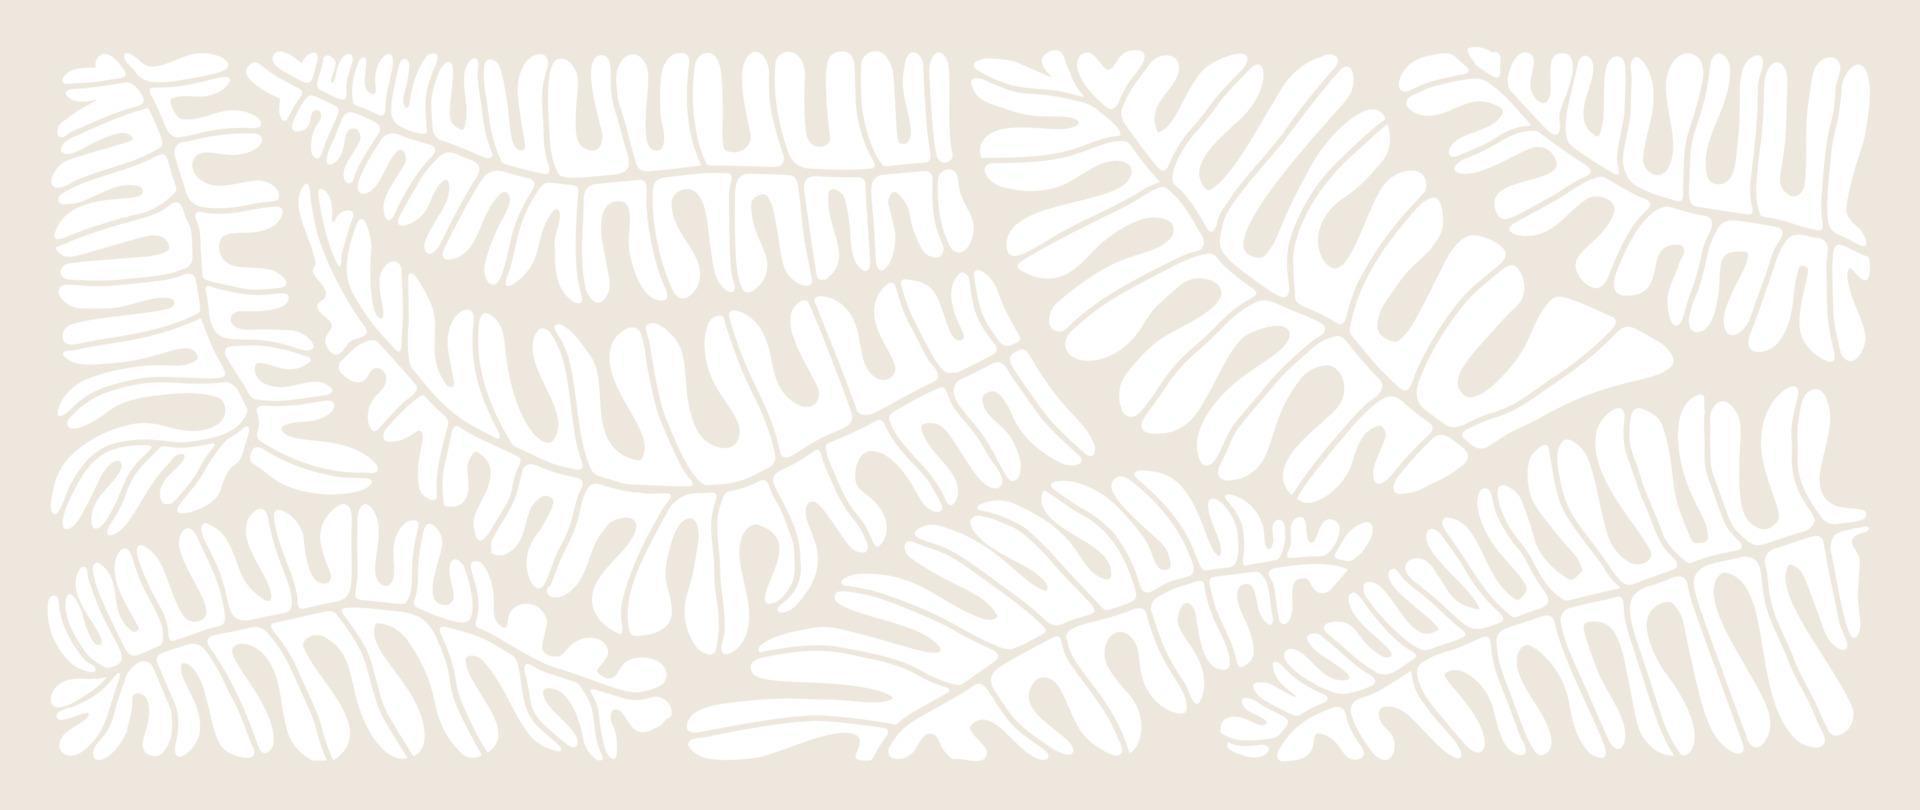 matisse konst bakgrund vektor. abstrakt naturlig hand dragen mönster design med löv, grenar. enkel samtida stil illustrerade design för tyg, skriva ut, omslag, baner, tapet. vektor